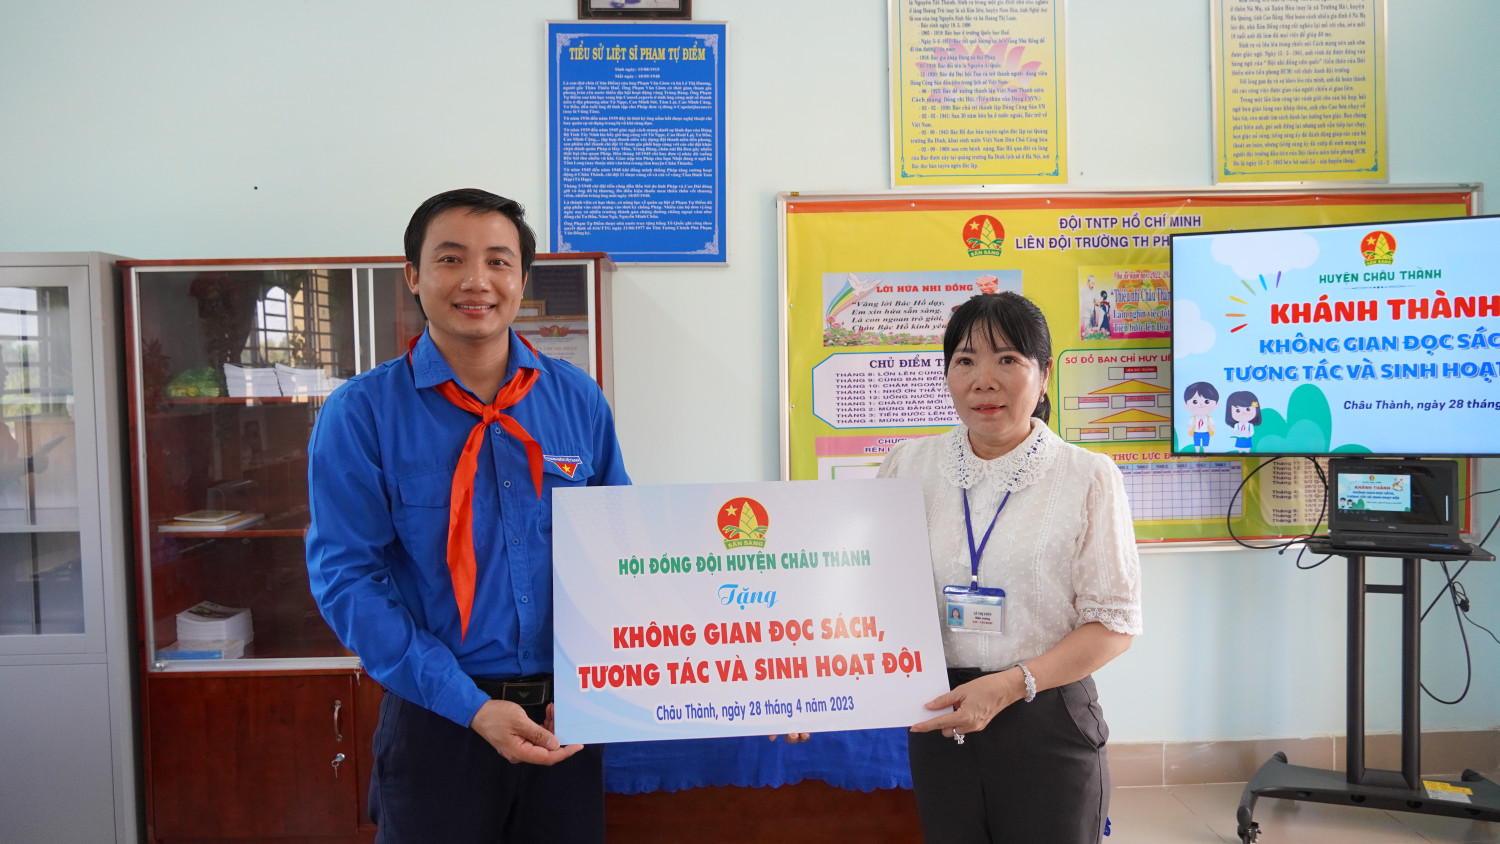 Anh Lê Đức Lập, Bí thư Huyện đoàn Châu Thành, Chủ tịch Hội đồng đội huyện trao bảng tượng trưng cho BGH nhà trường